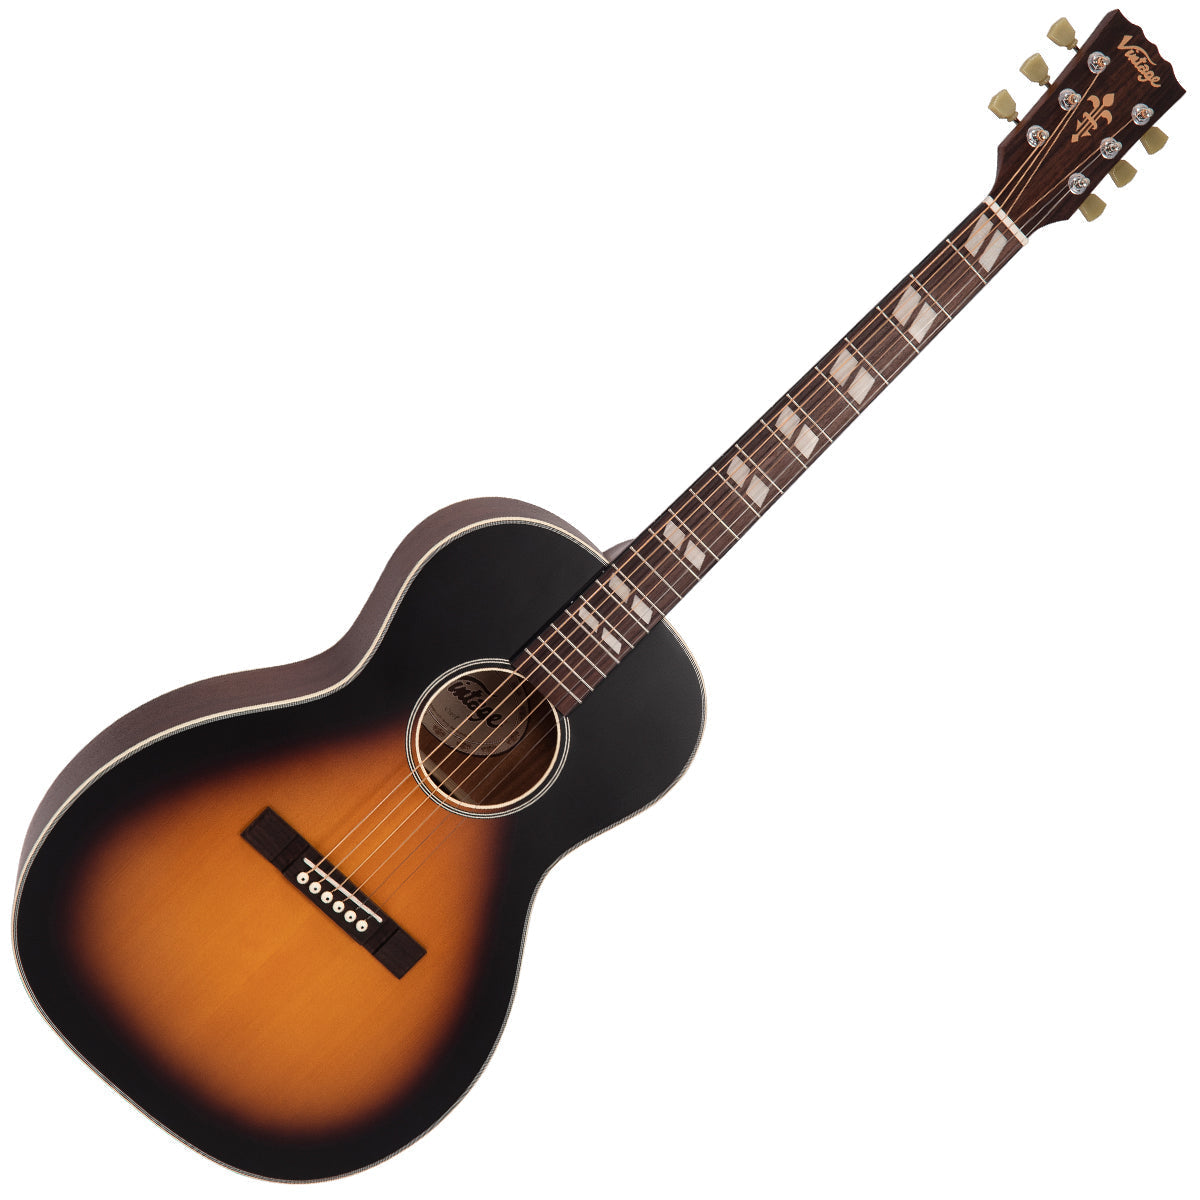 Vintage Historic Series 'Parlour' Acoustic Guitar ~ Vintage Sunburst, Acoustic Guitars for sale at Richards Guitars.